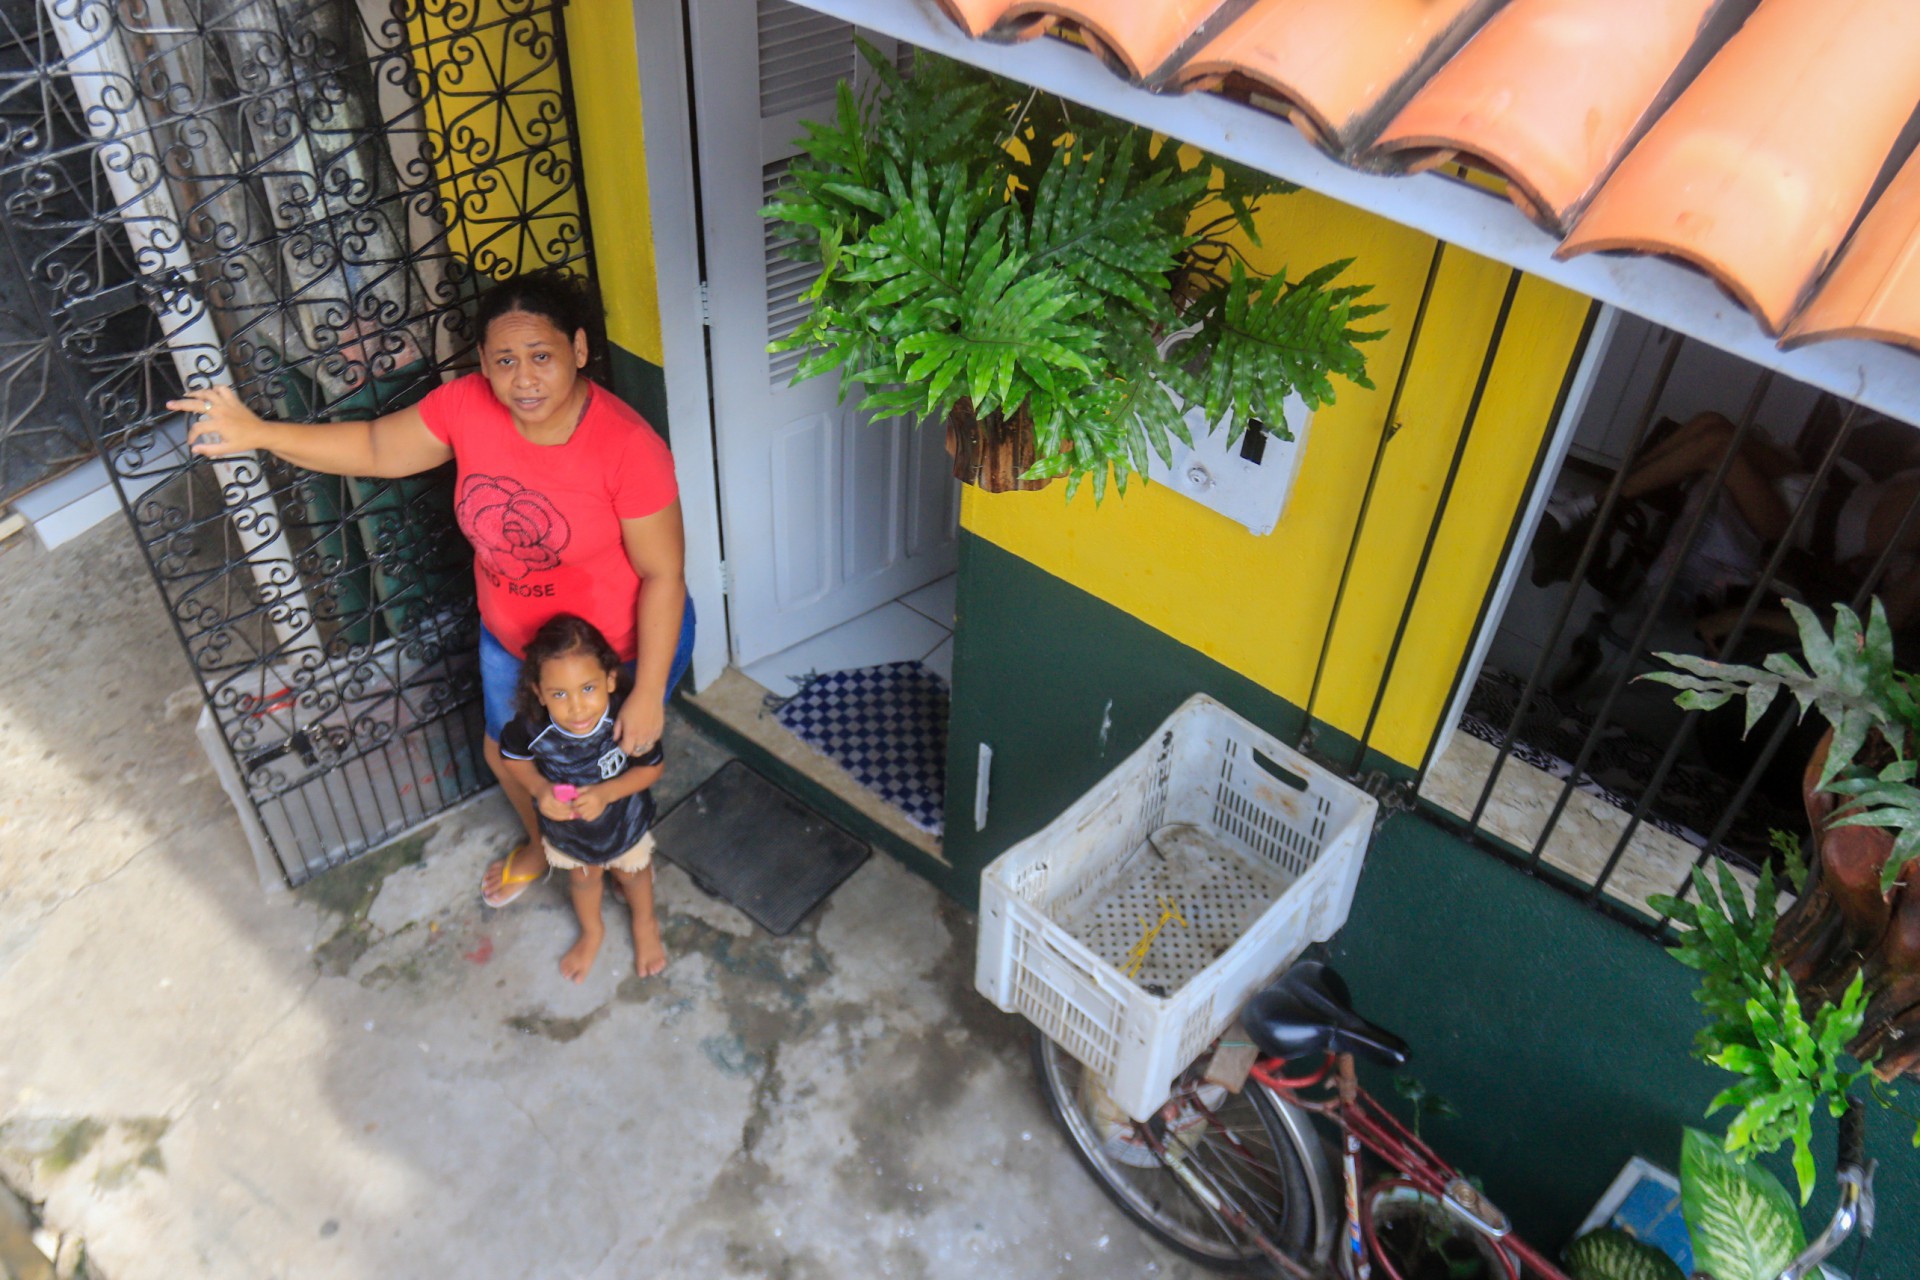 PROJETO realizará reformas em três casas da comunidade  (Foto: BARBARA MOIRA)